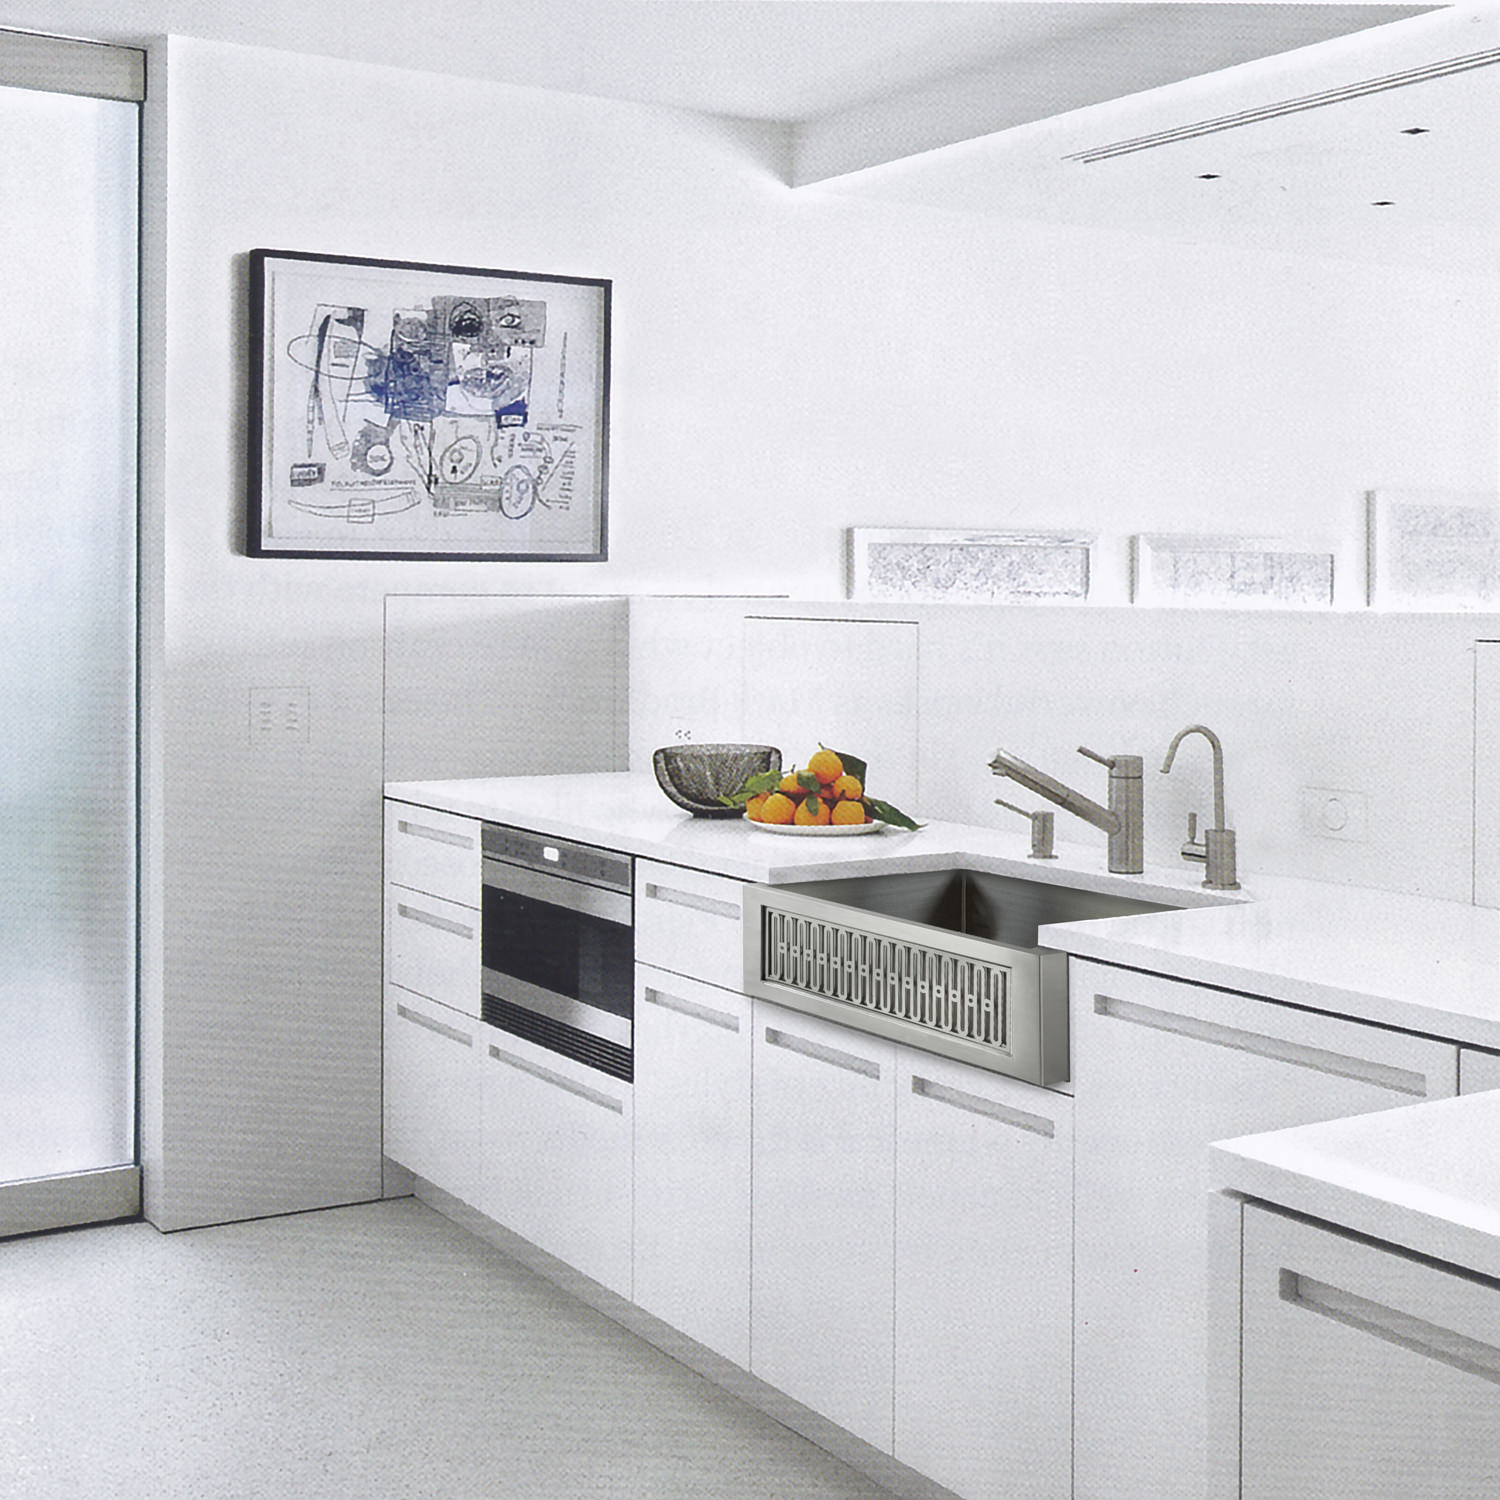 linkasink-kitchen-sink-modern